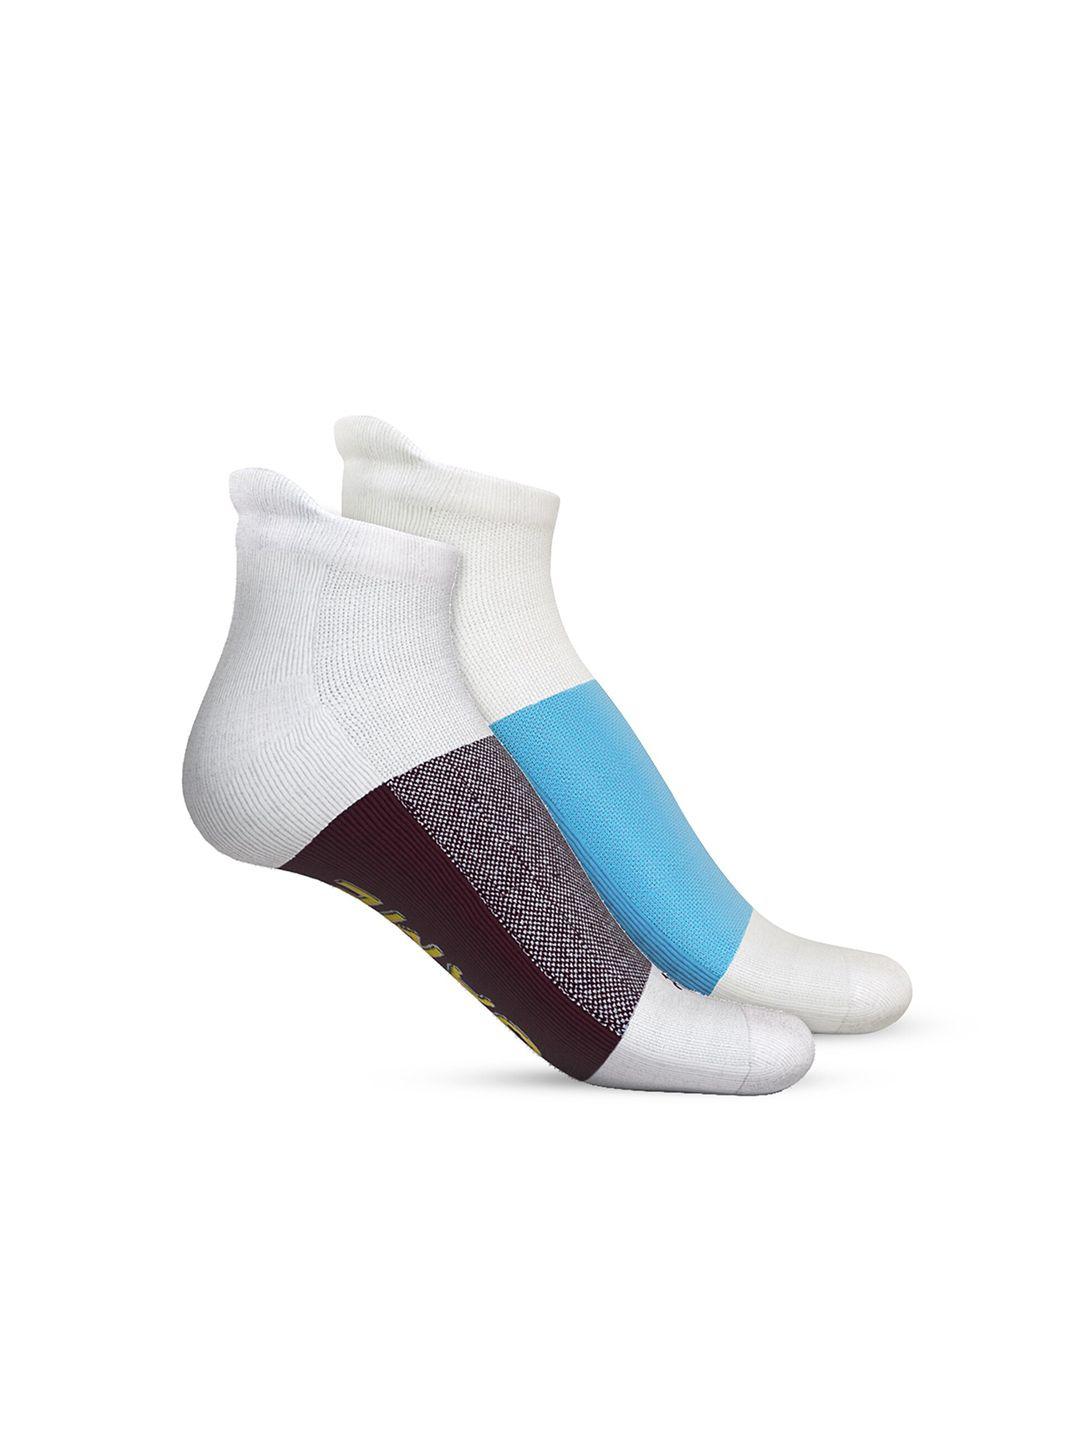 talkingsox-unisex-pack-of-2-colourblocked-ankle-length-socks